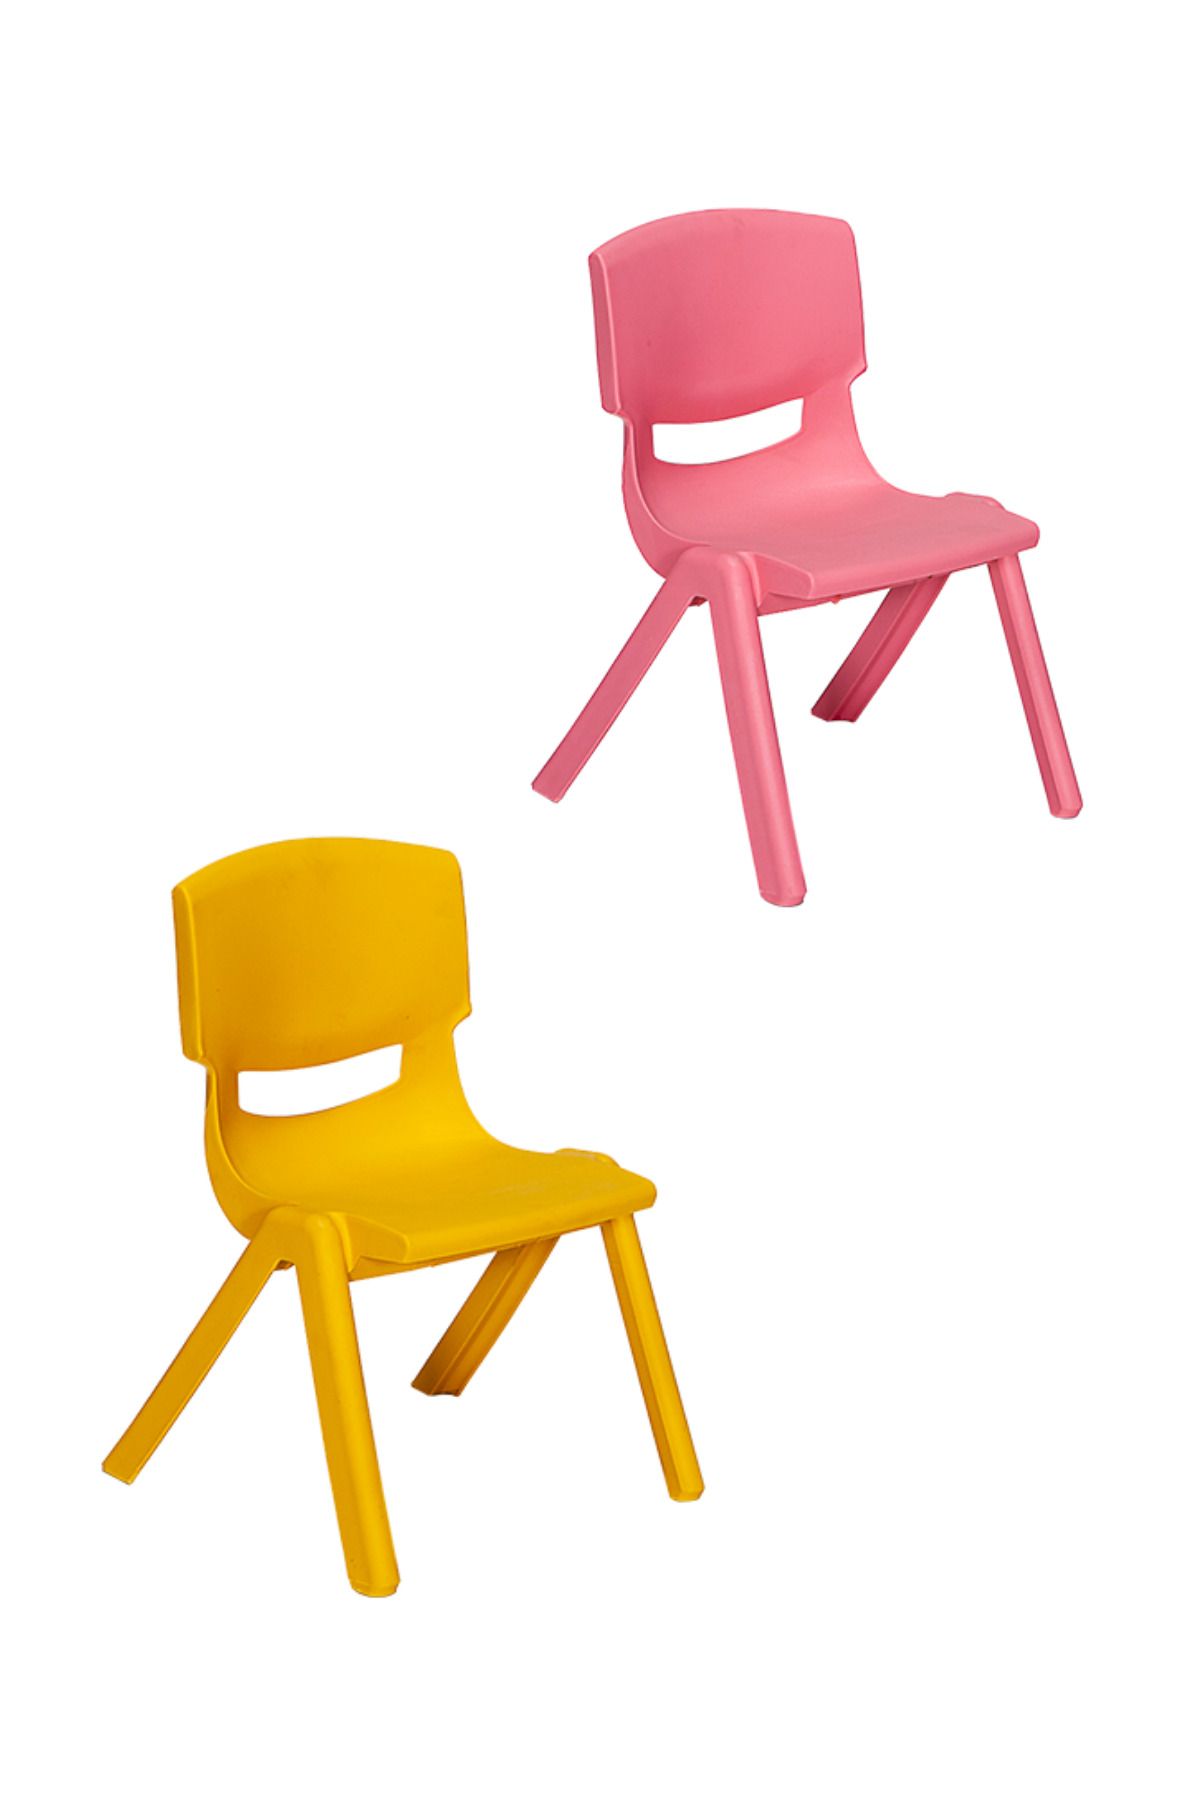 MOBETTO 2 Adet Kreş Anaokulu Çocuk Sandalyesi Sert Plastik- Pembe/Sarı